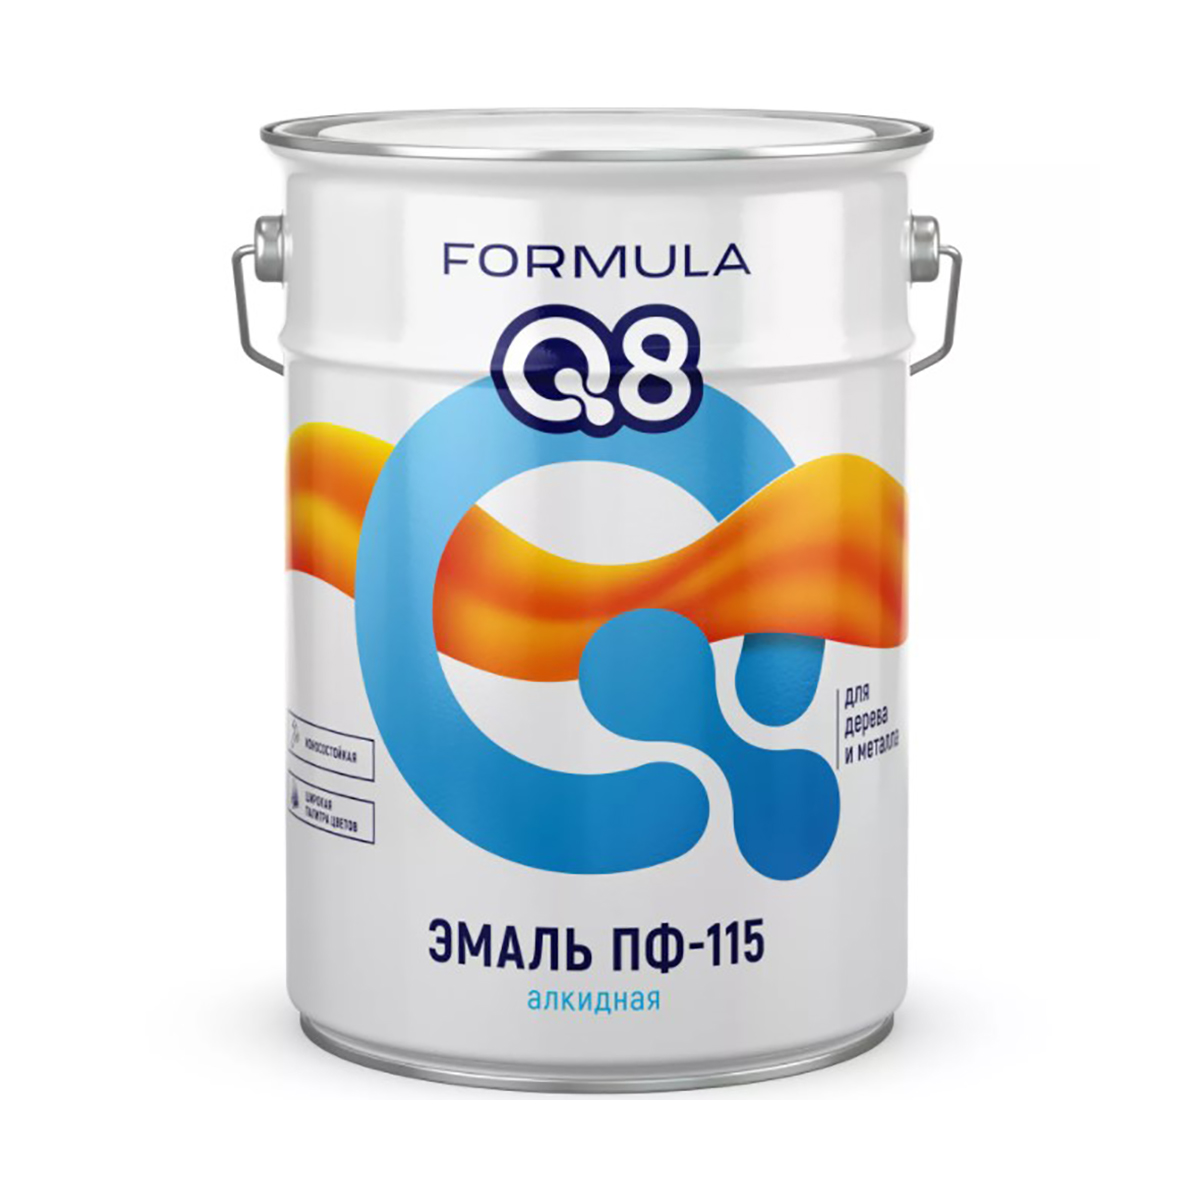 Эмаль ПФ-115 алкидная Formula Q8, глянцевая, 20 кг, голубая